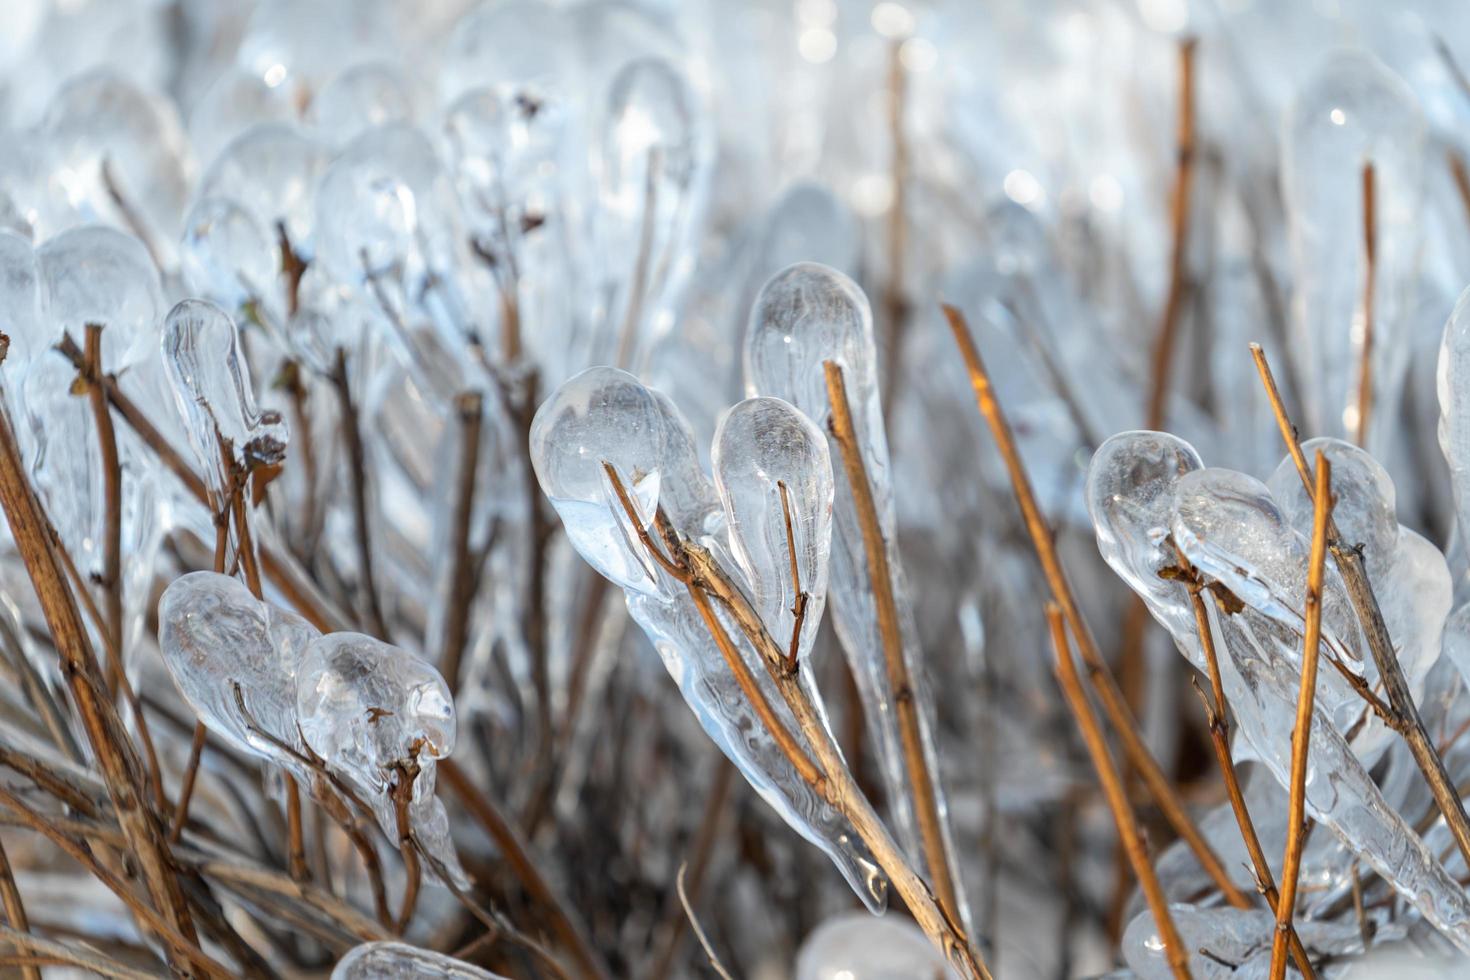 fond naturel avec des cristaux de glace sur les plantes après une pluie glacée. photo